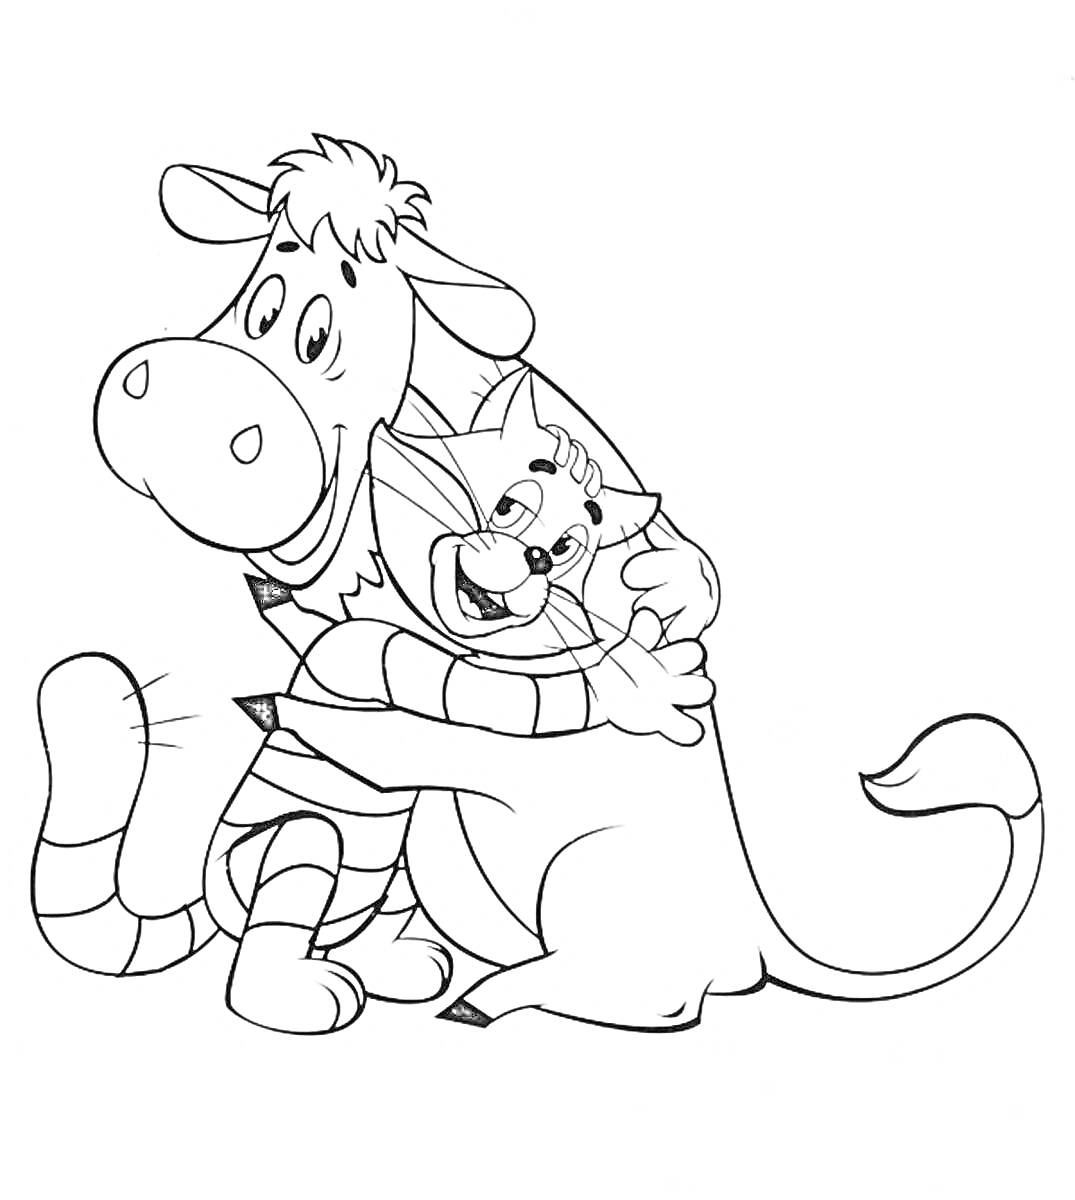 Корова и кот из Простоквашино обнимаются